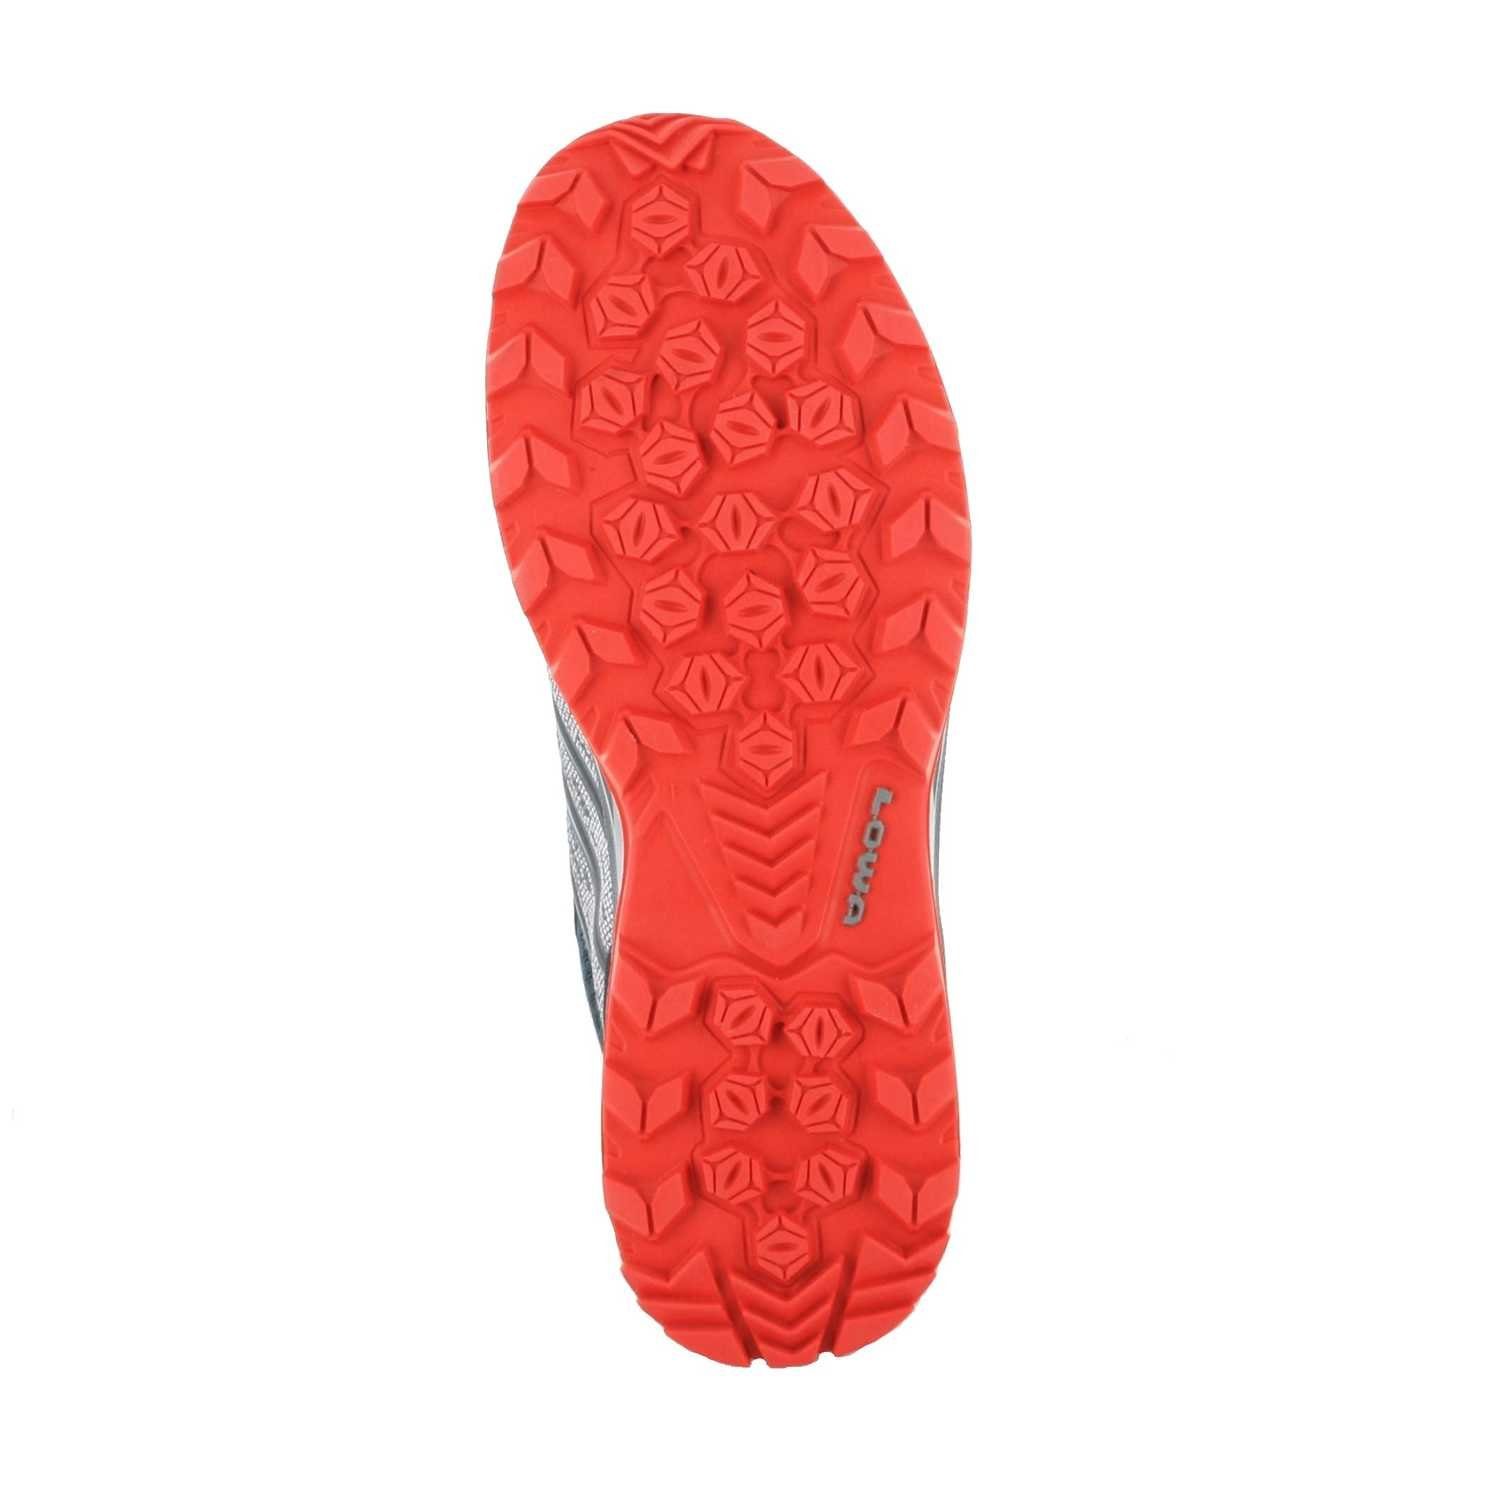 Lowa »Lowa Herren Wander Stiefel AEROX GTX LO Graphit Rot« Wanderstiefel  online kaufen | OTTO